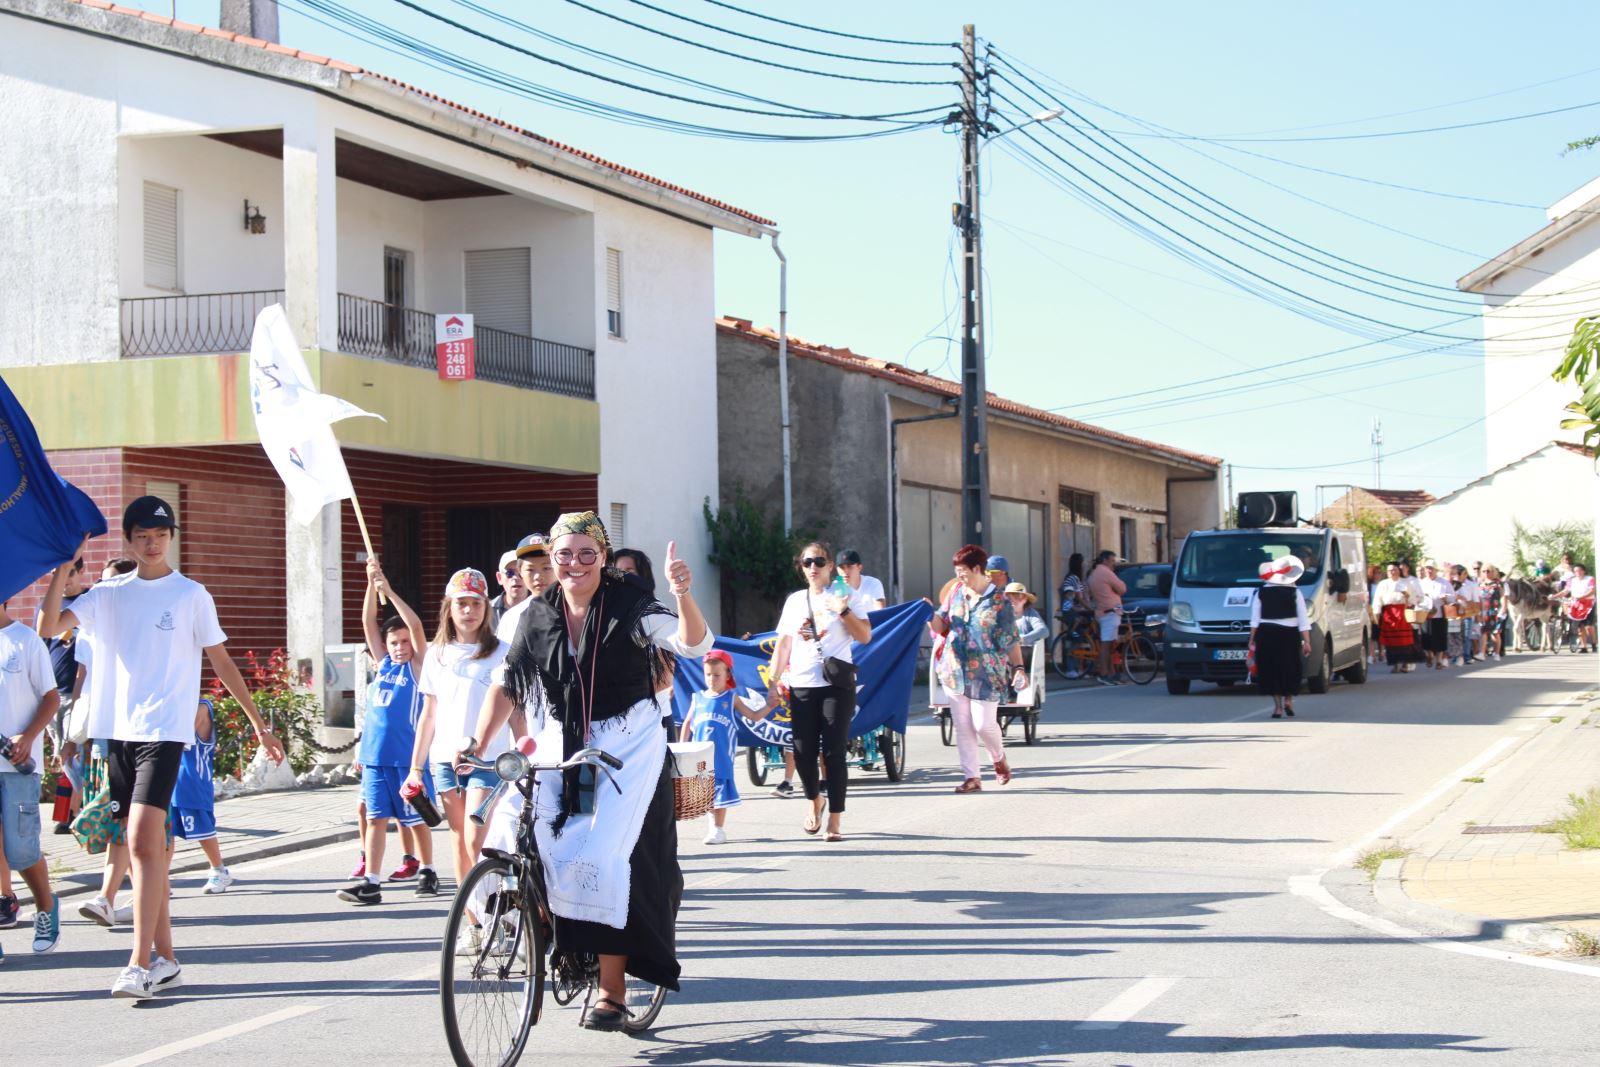 Sangalhos | ‘Demonstração de confiança por parte da comunidade’